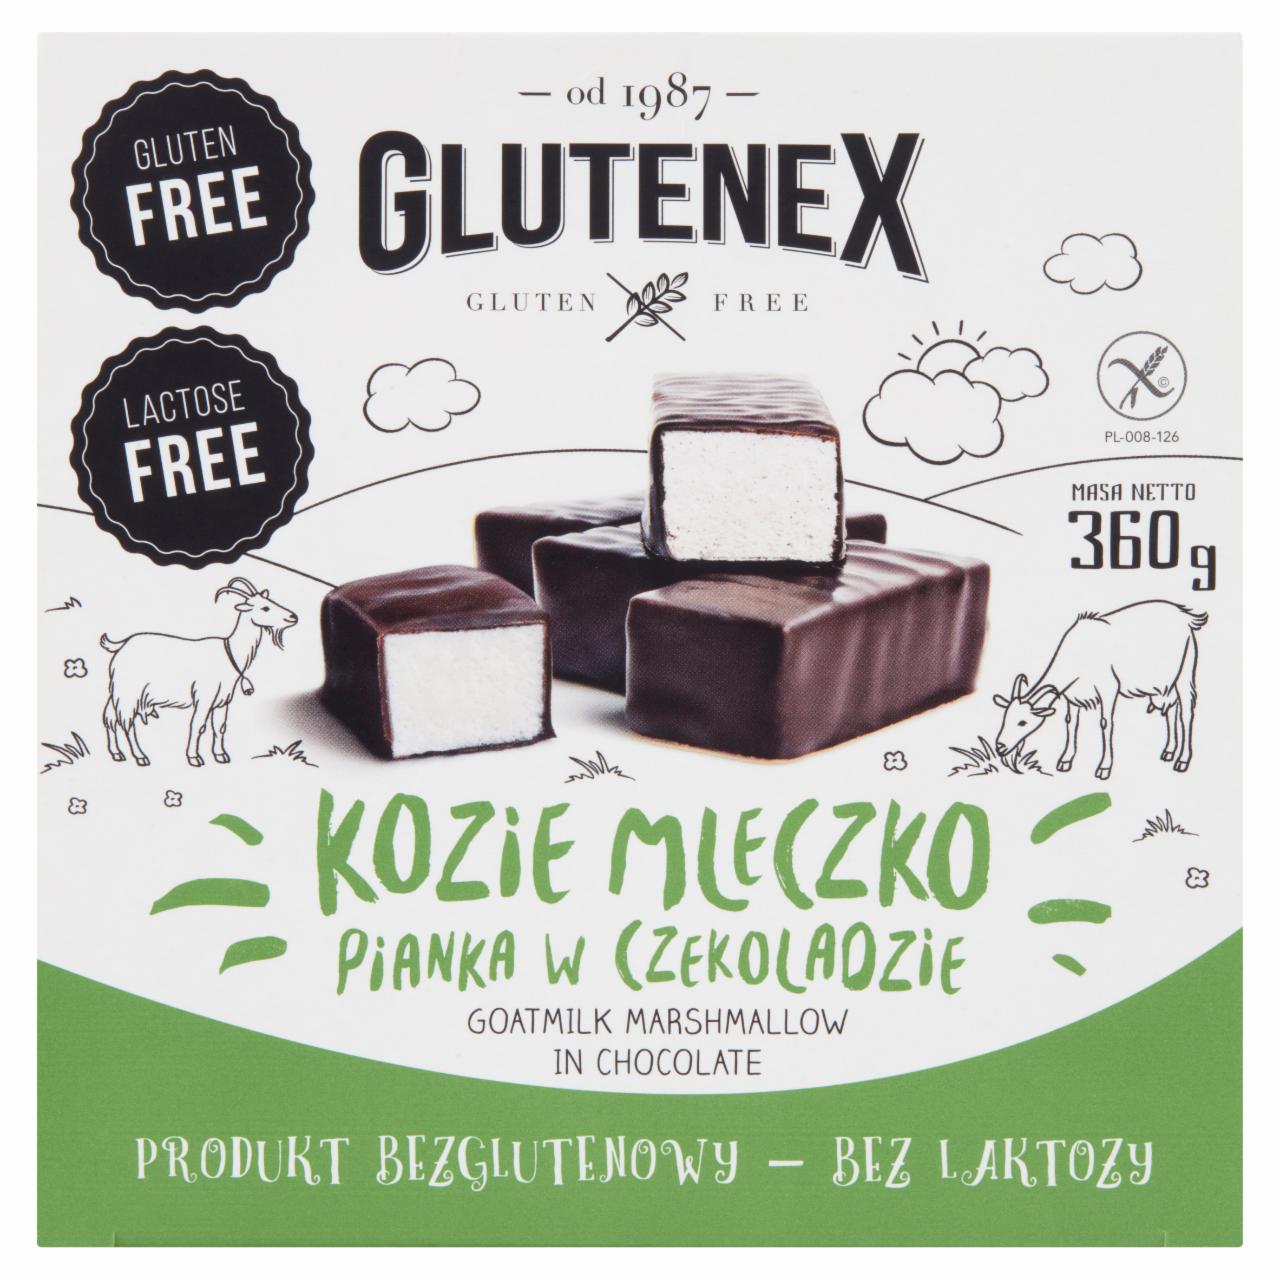 Zdjęcia - Glutenex Kozie mleczko pianka w czekoladzie 360 g